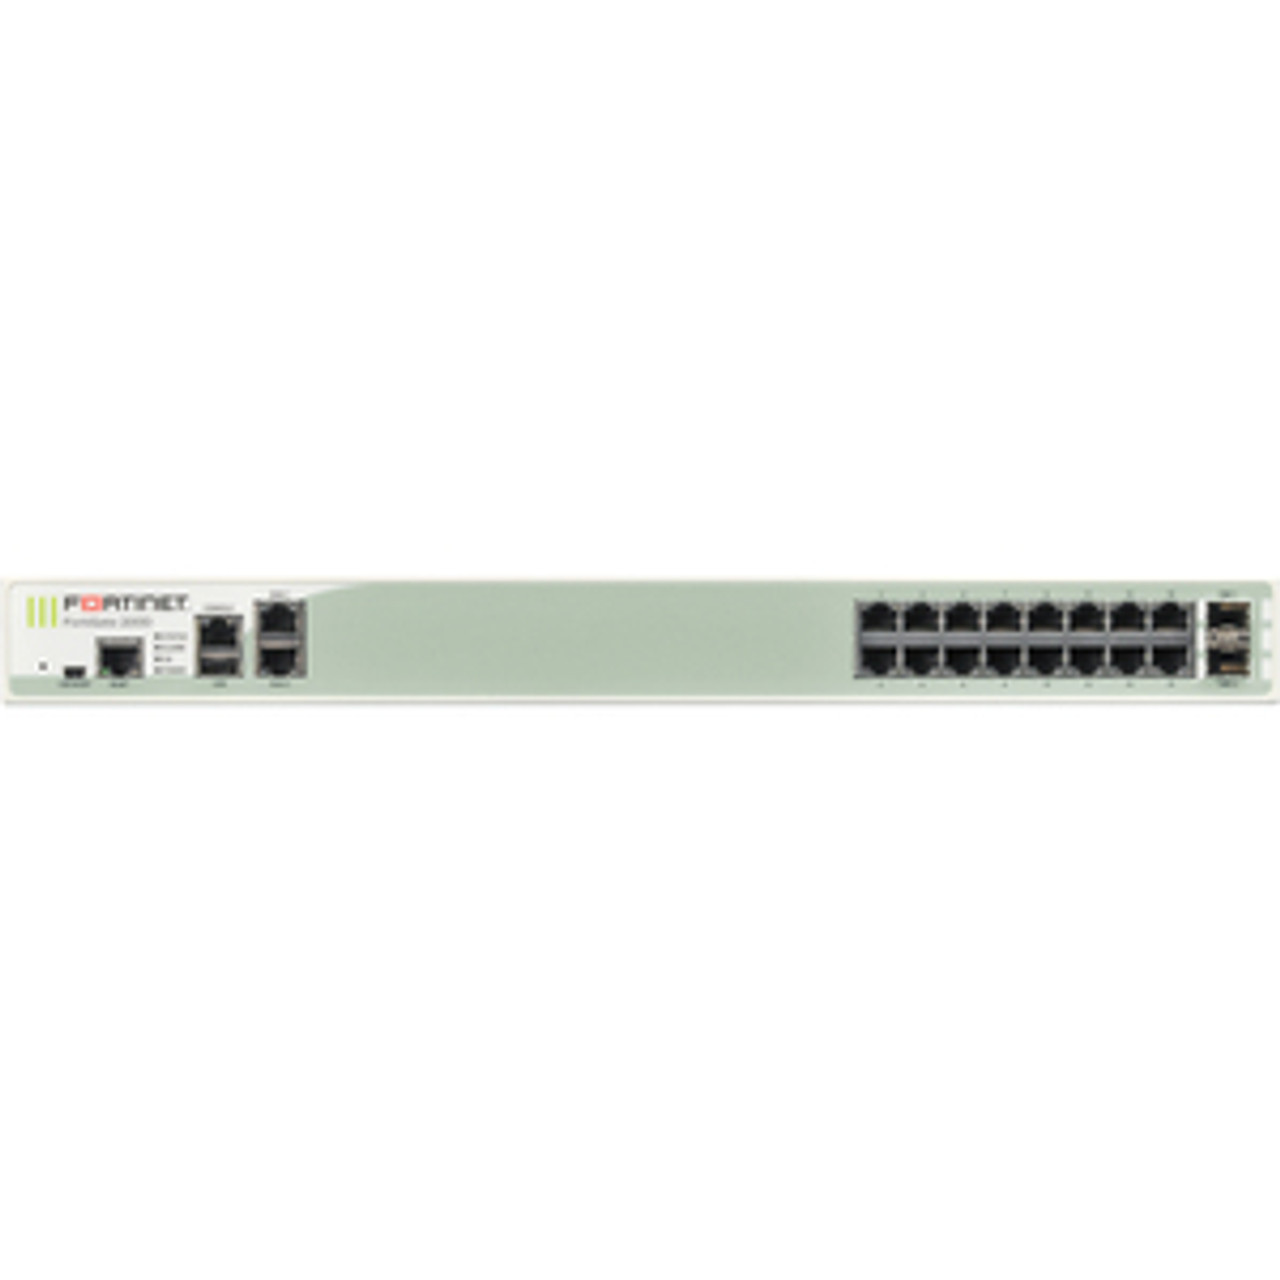 Fortinet FortiGate 200D Network Security/Firewall Appliance - 18 Port - 10/100/1000Base-T, 1000Base-X - Gigabit Ethernet - 18 x RJ-45 - 2 Total Expansion Slots - 1U - Rack-mountable FC